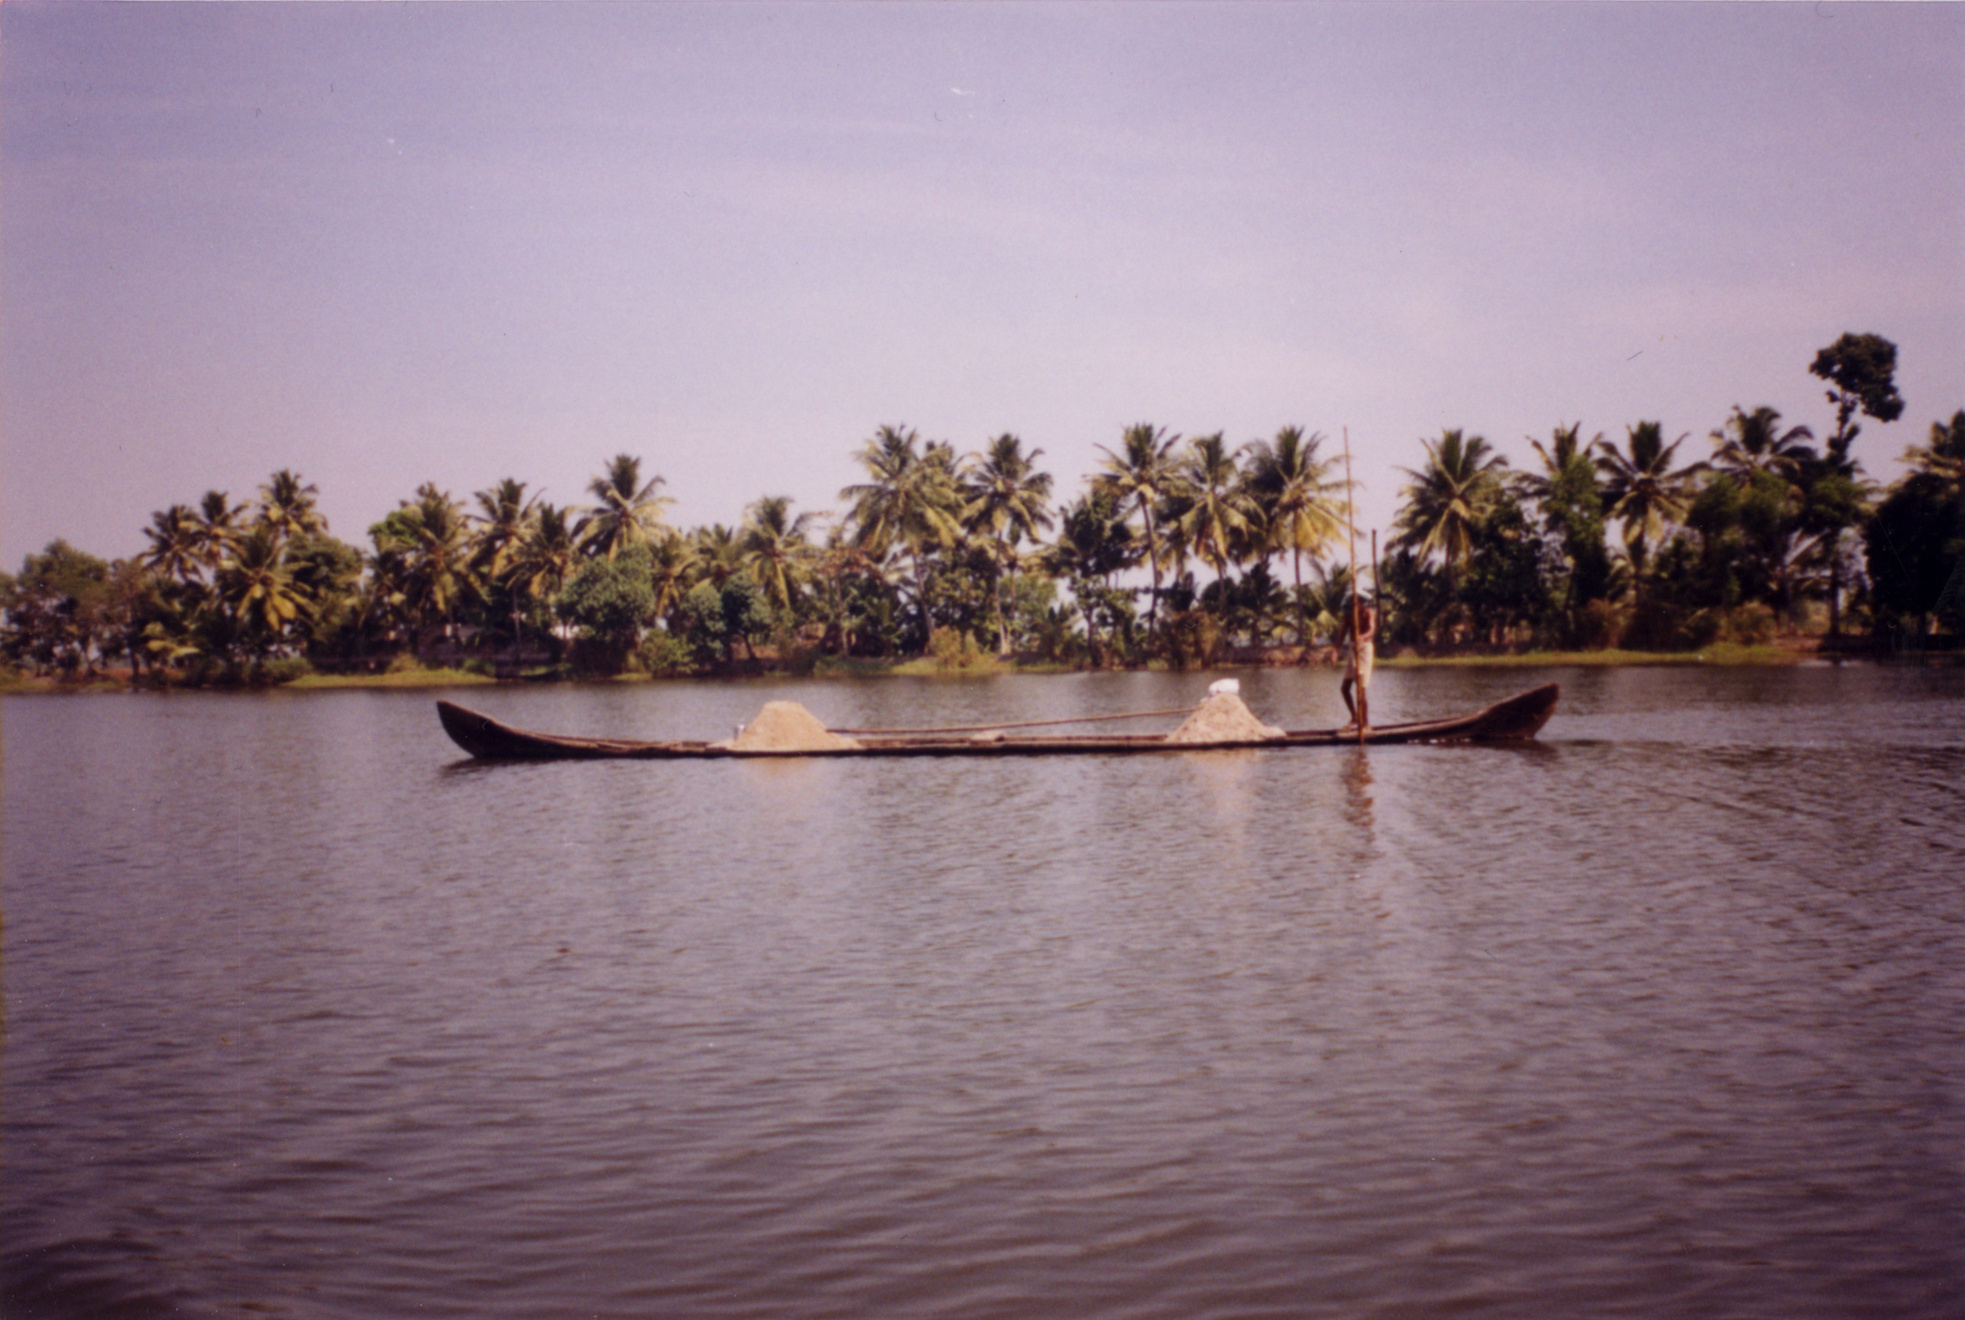 iuliana asian country palm trees river boat pole tropics